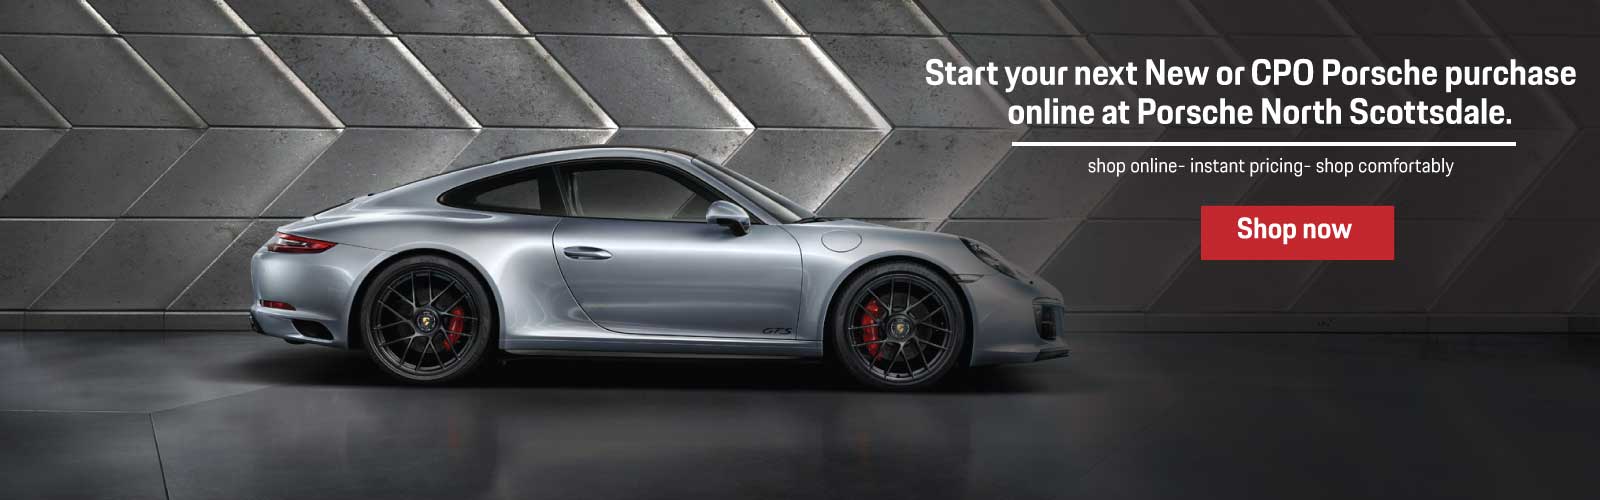 Start your next New or CPO Porsche purchase online